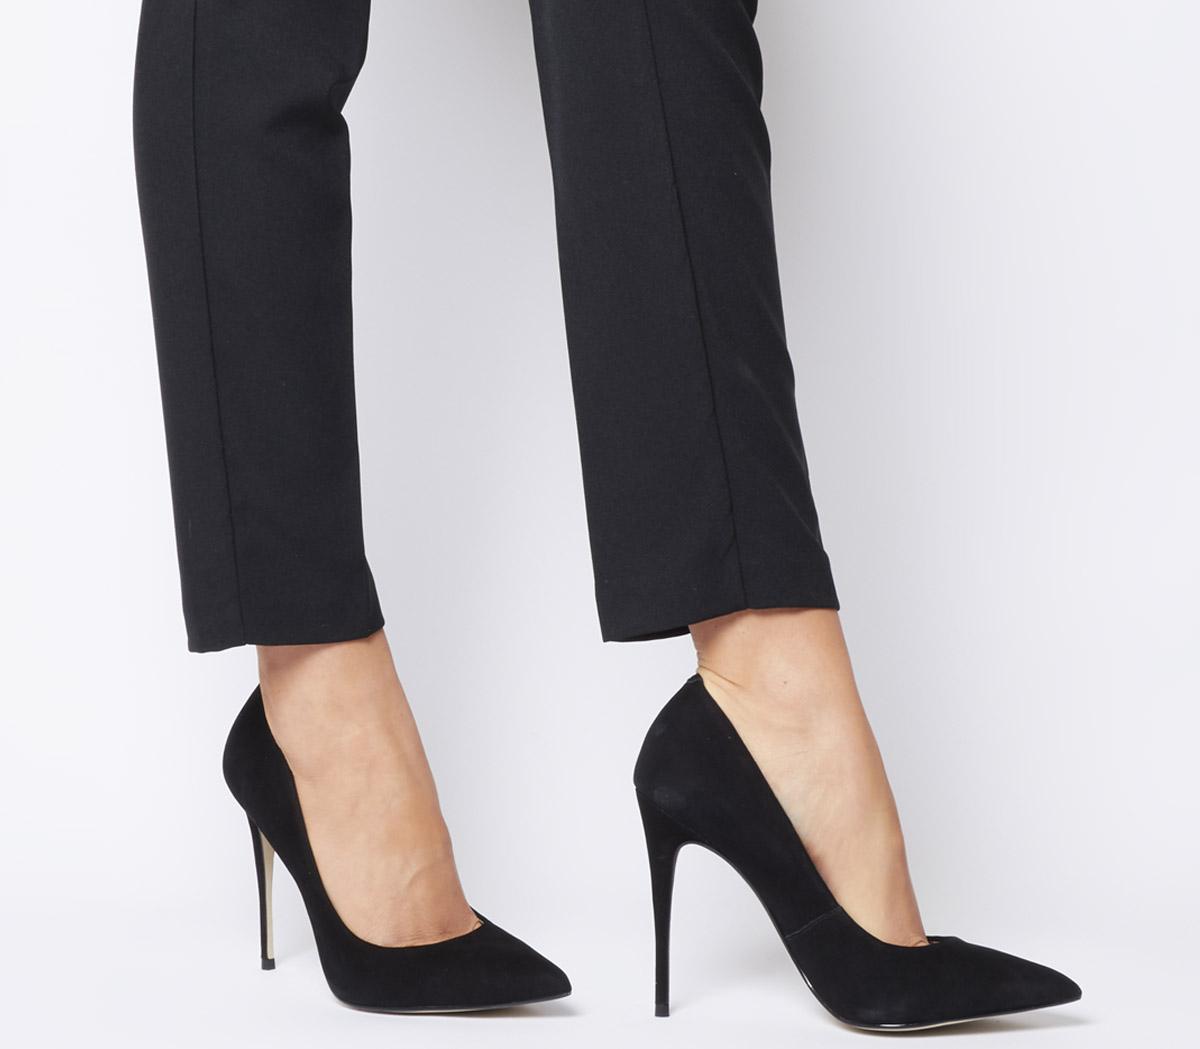 black pointed stiletto heels